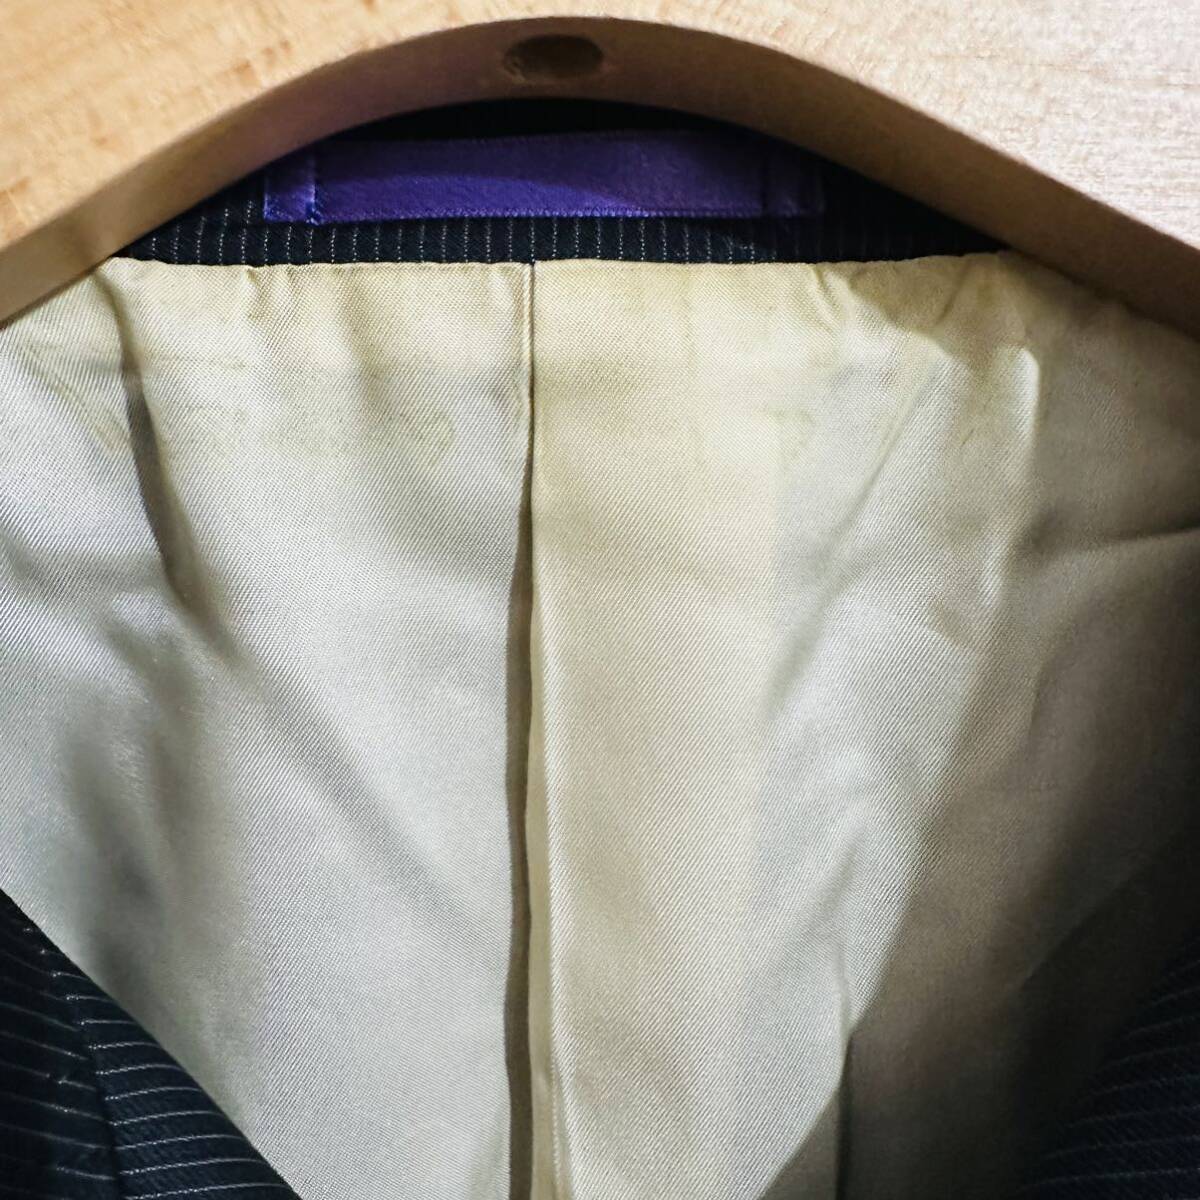  супер редкий XL Paul Smith коллекция жакет блузон шерсть костюм внешний сделано в Японии мужской LL черный чёрный Paul Smith COLLECTION